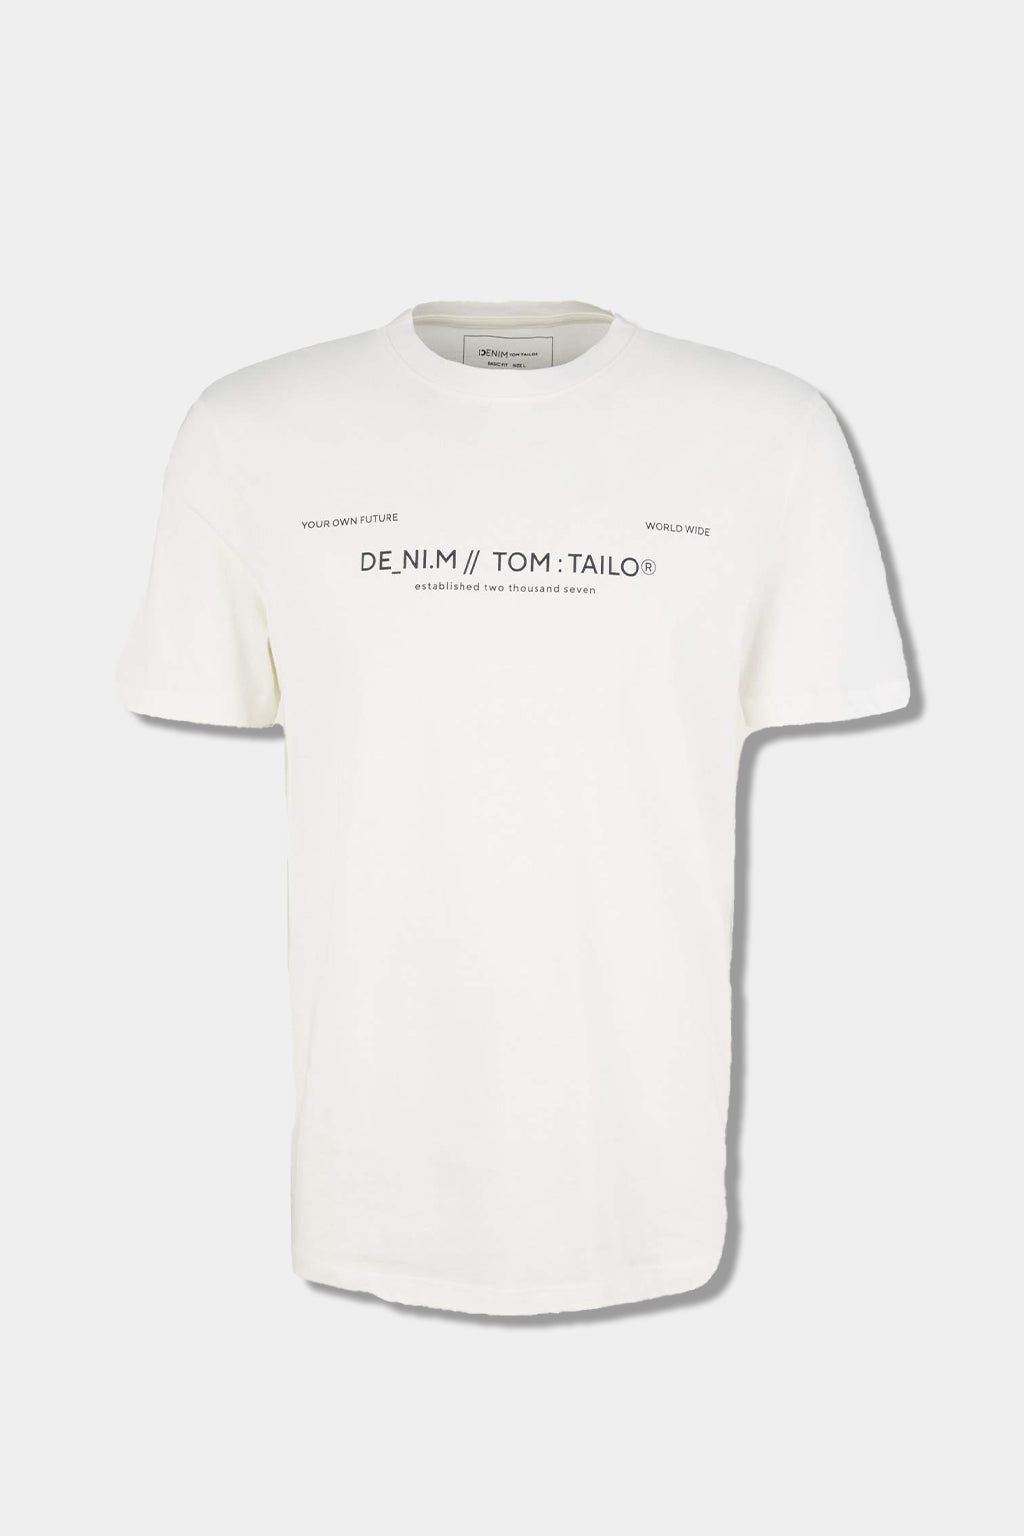 Tom Tailor -  Men's T-shirt